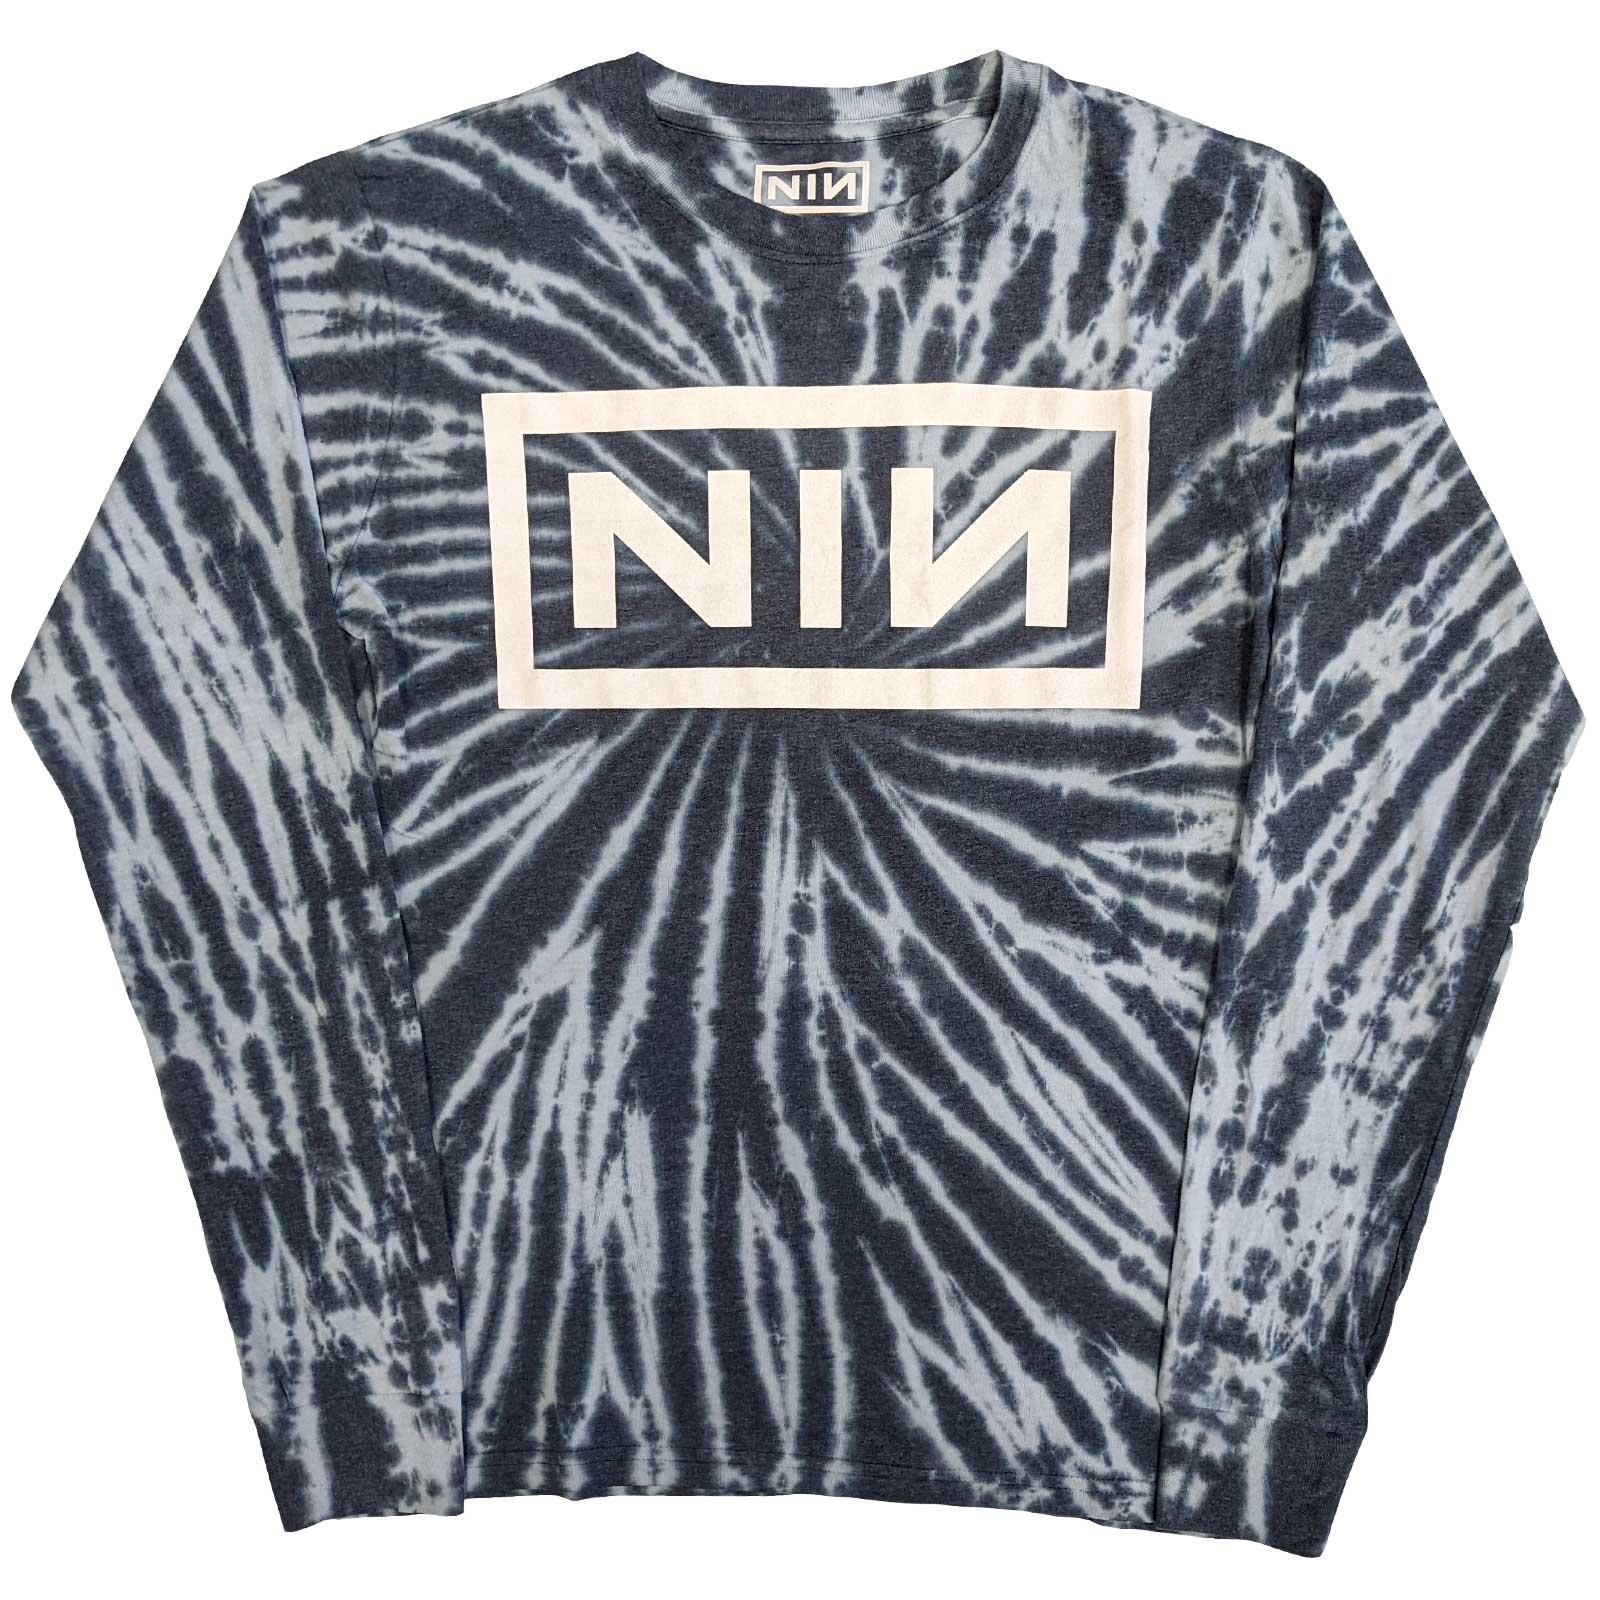 (ナイン・インチ・ネイルズ) Nine Inch Nails オフィシャル商品 ユニセックス タイダイ Tシャツ コットン ロゴ 長袖 トップス 【海外通販】